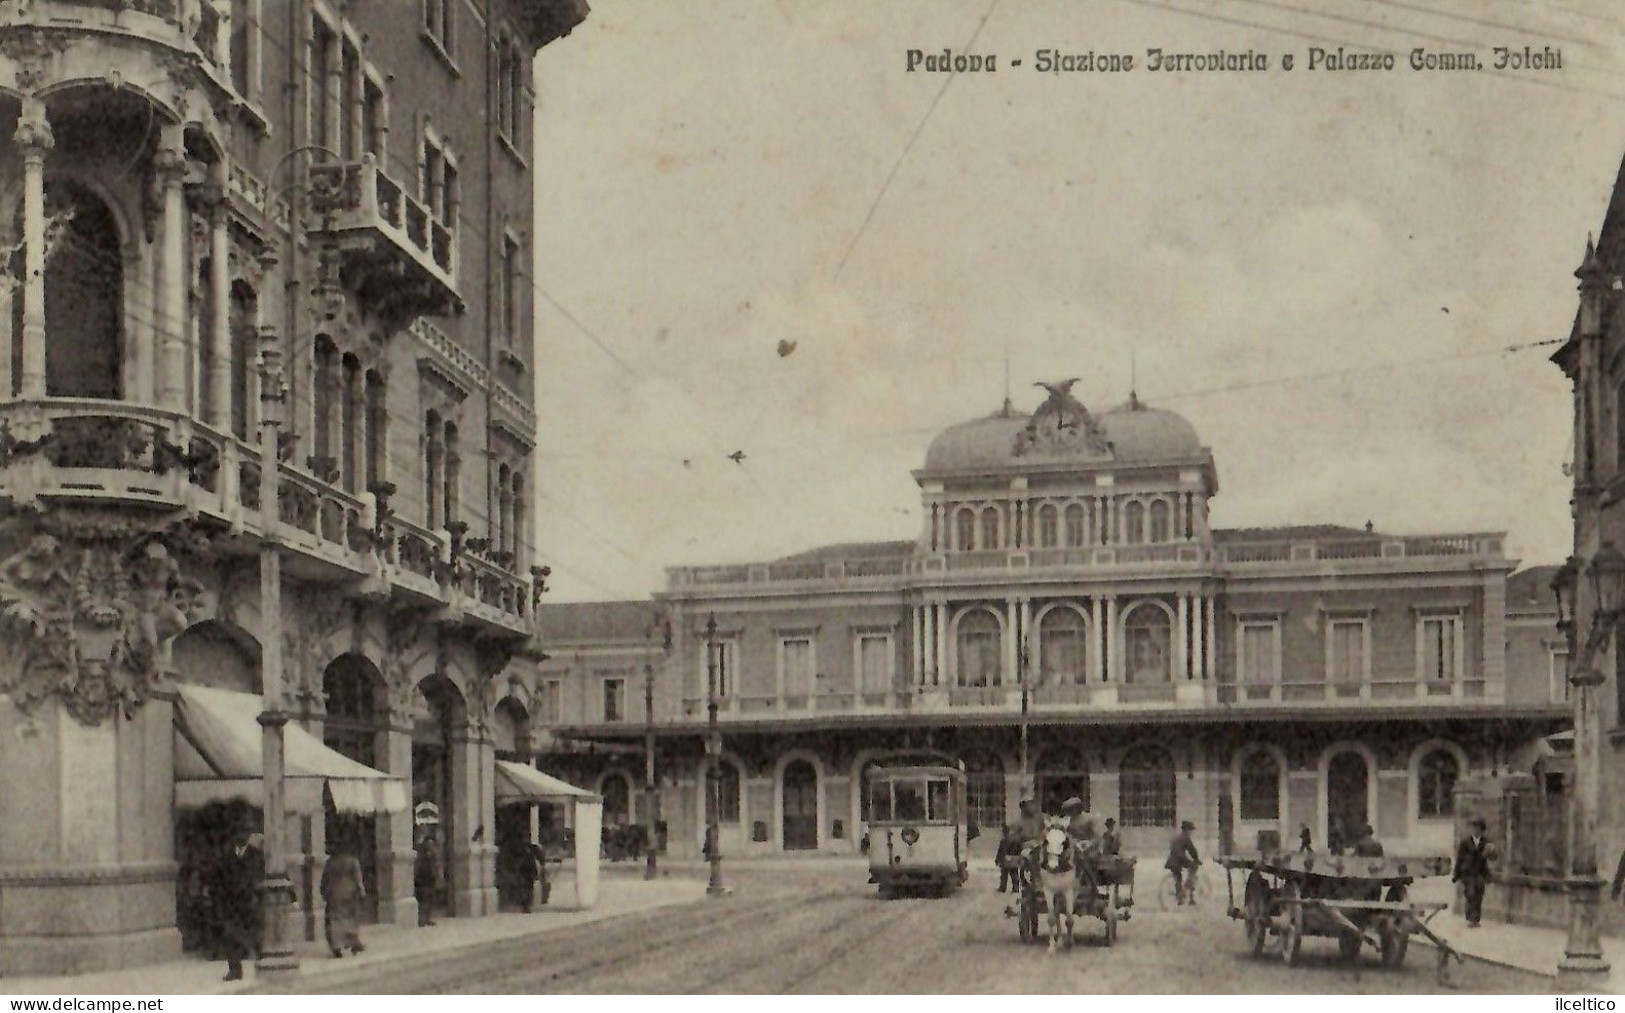 PADOVA - STAZIONE  FERROVIARIA - PALAZZO  COMM. FOLCHI - - Padova